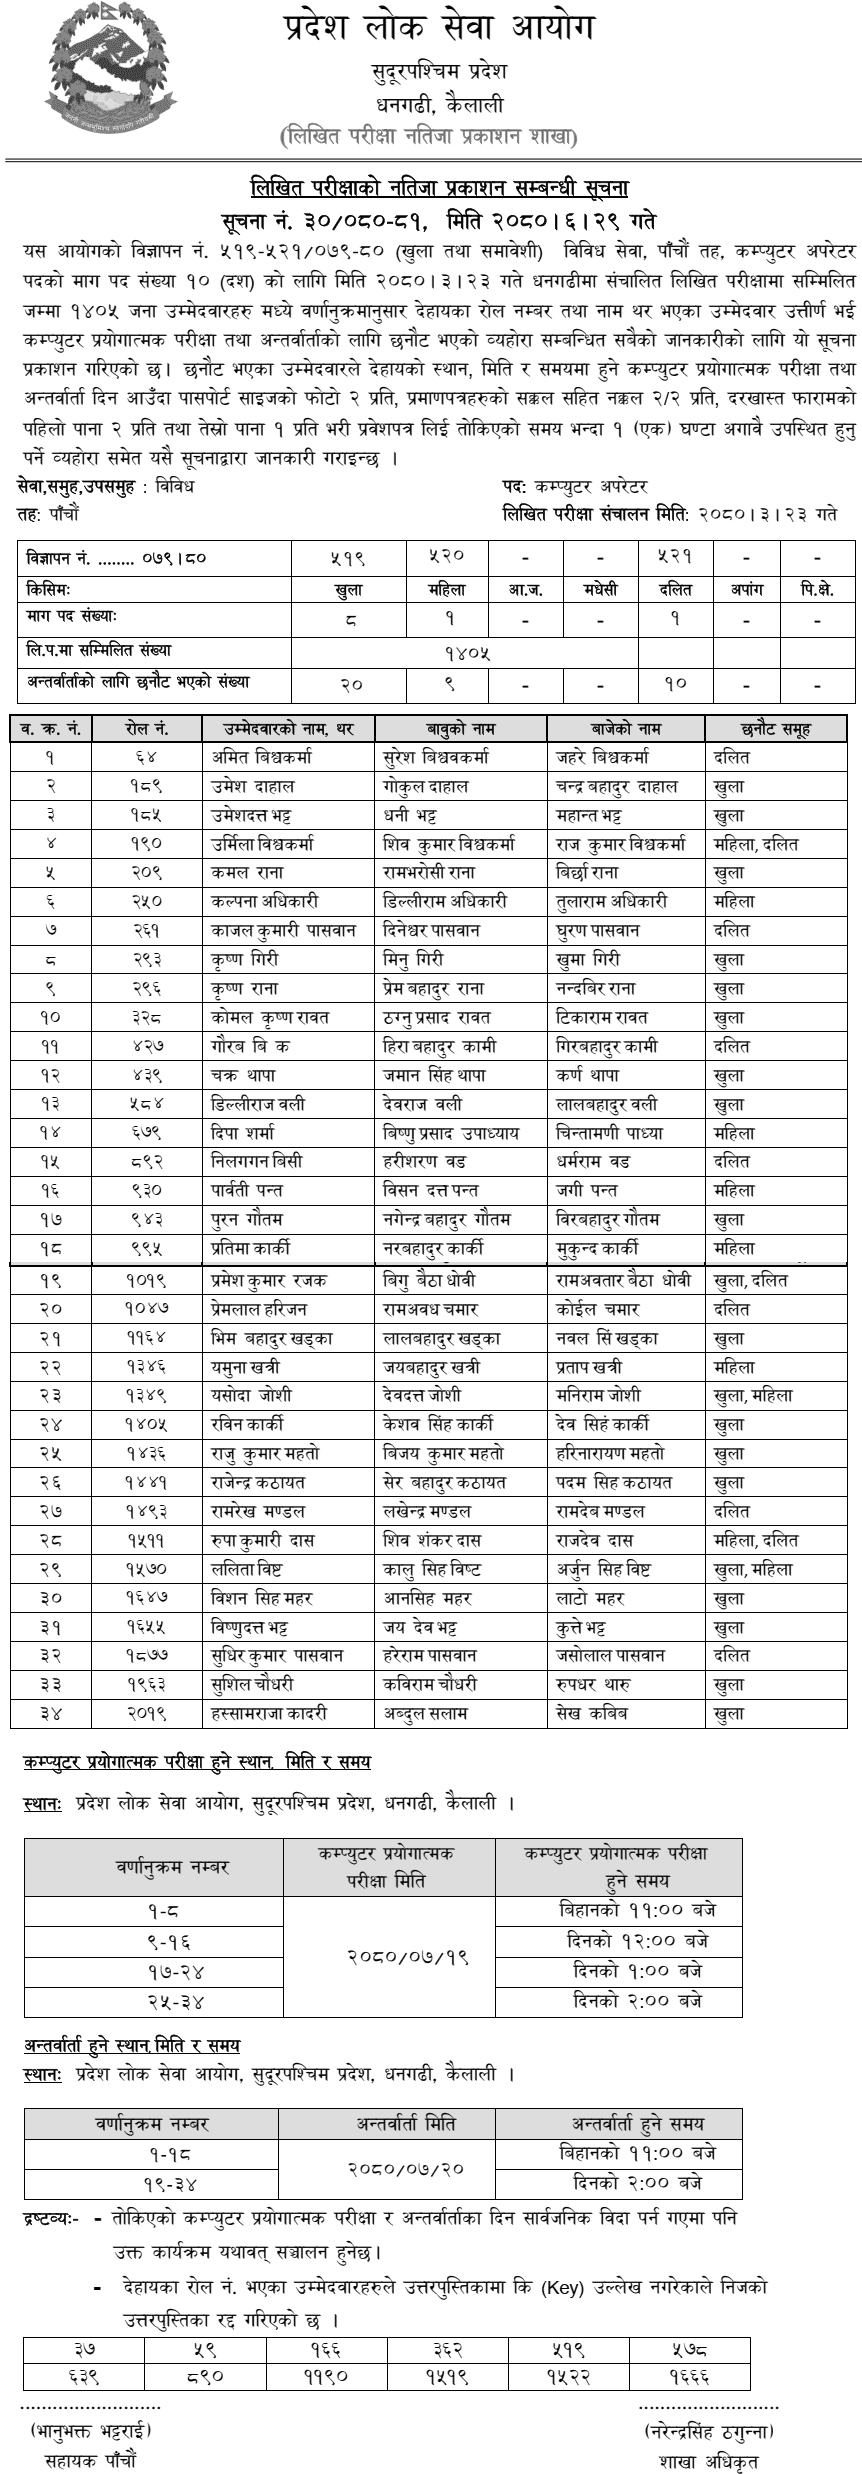 Sudurpashchim Pradesh Lok Sewa Aayog Written Exam Result of Computer Operator 2080